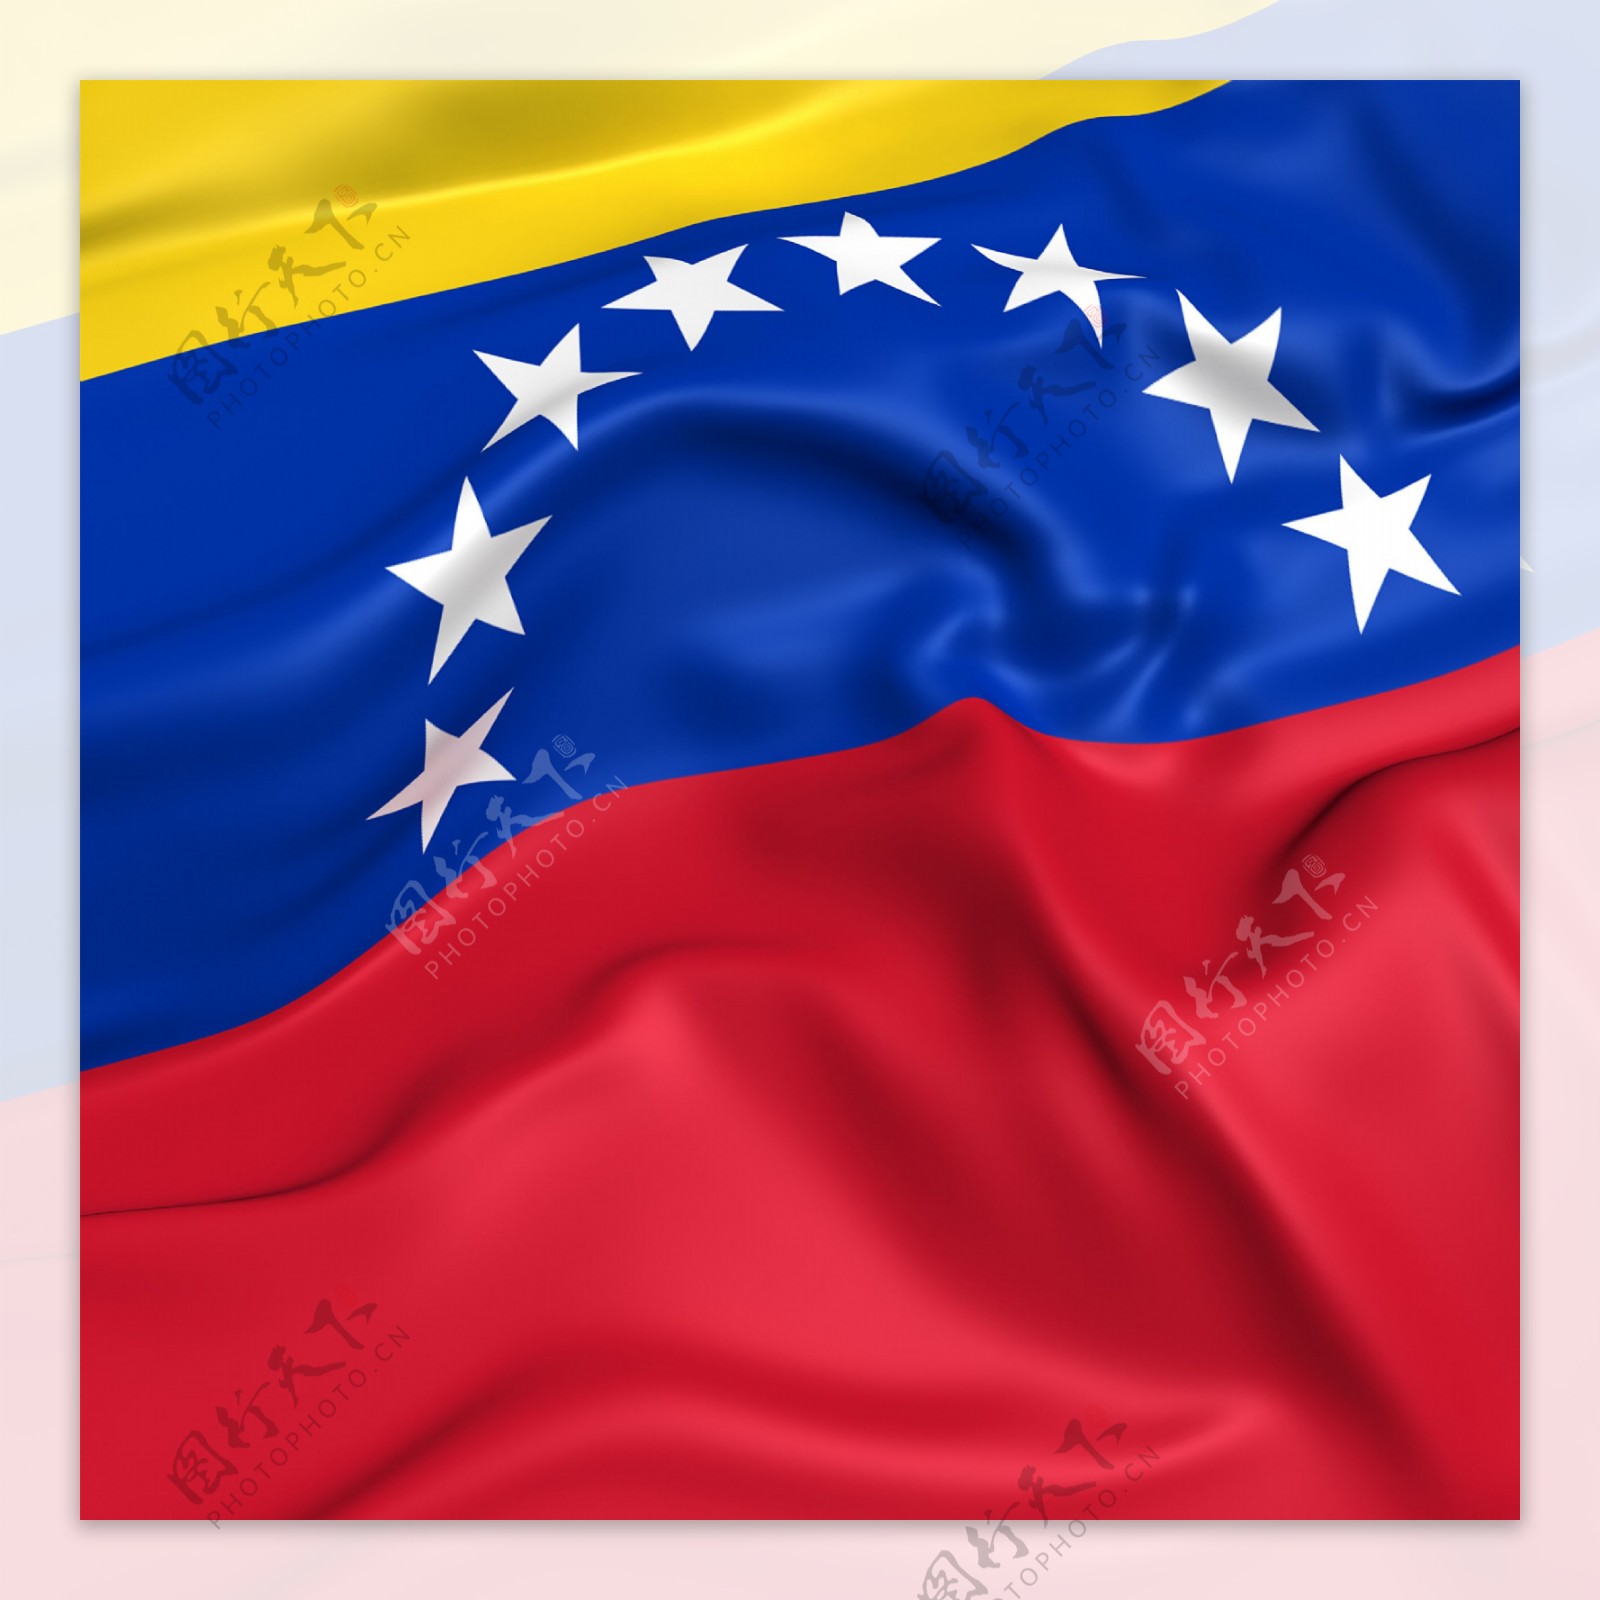 委内瑞拉国旗状态